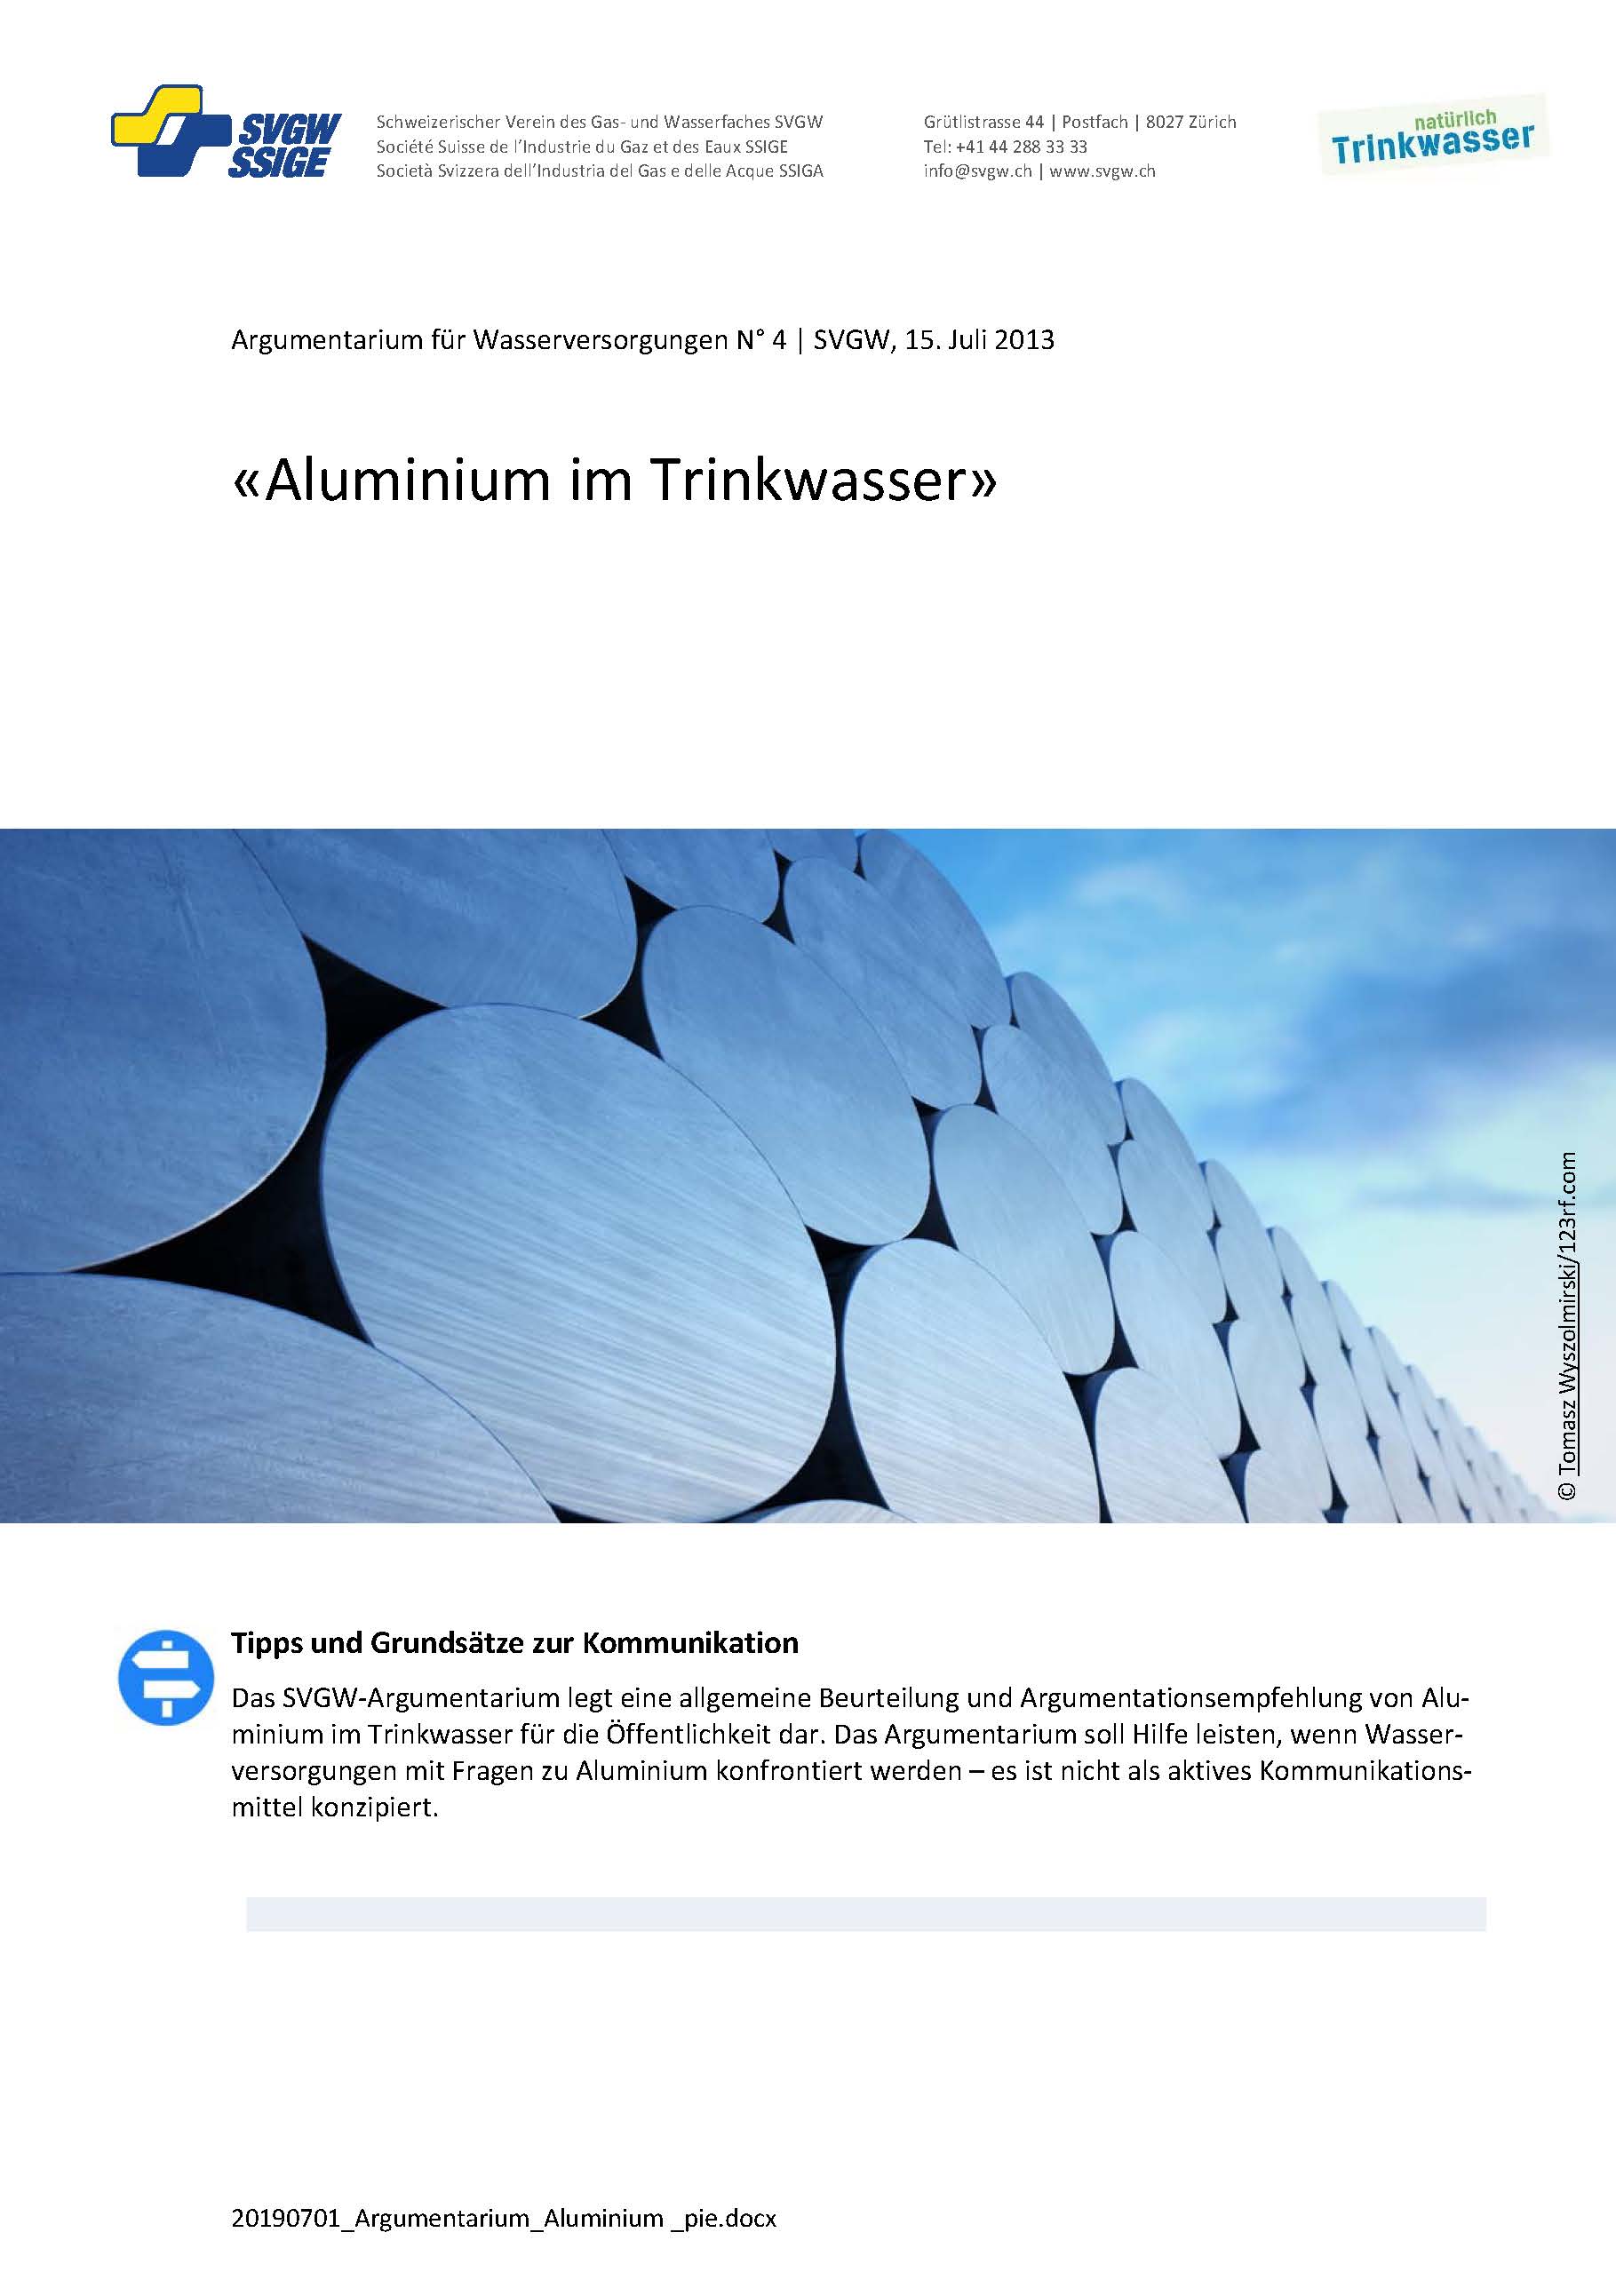 Argumentarium: «Aluminium im Trinkwasser»